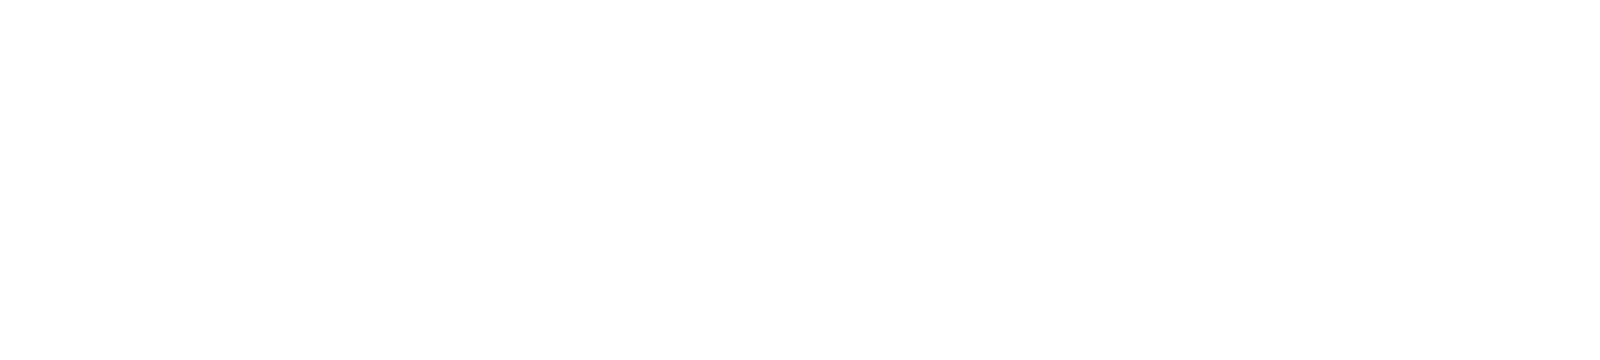 Dominic Miller_Fan Page Japan